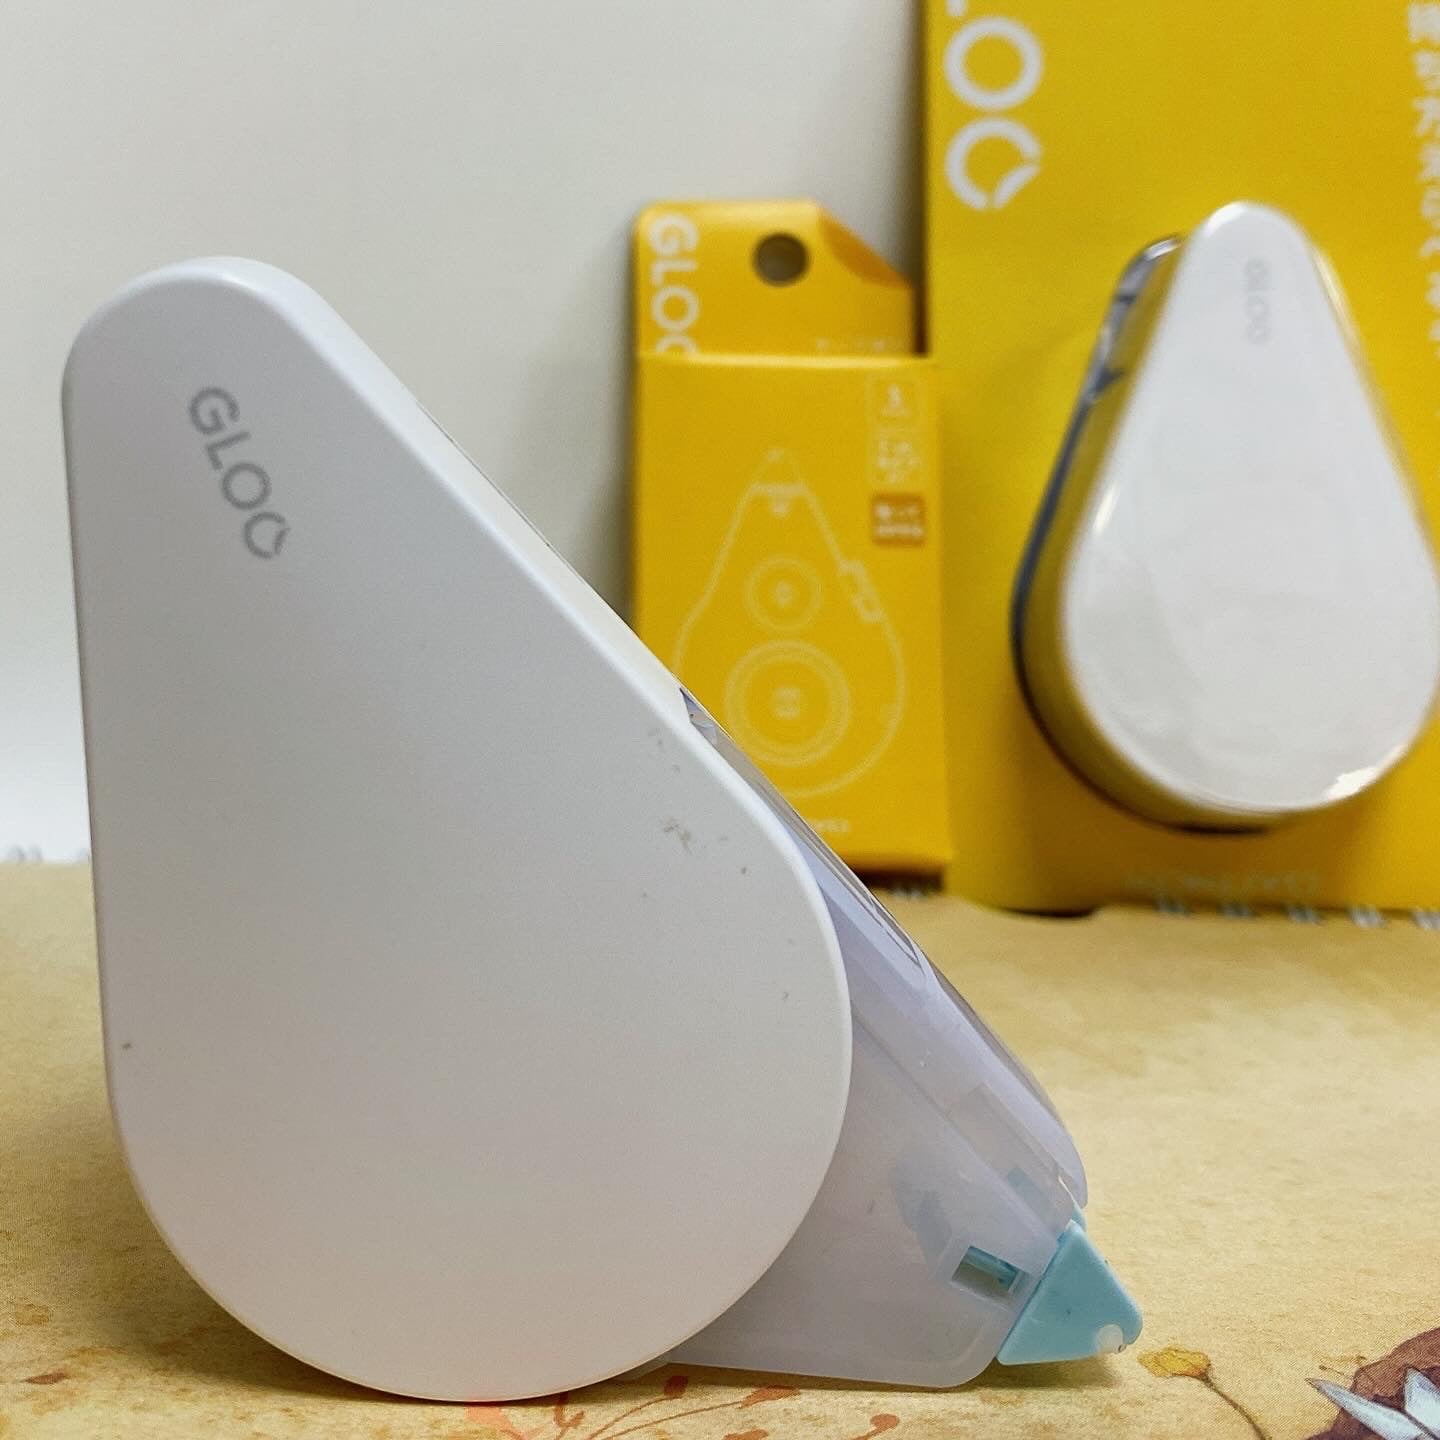 日本 Kokuyo GLOO 雙面膠紙機（大號） - 重覆黏貼型款 （New)